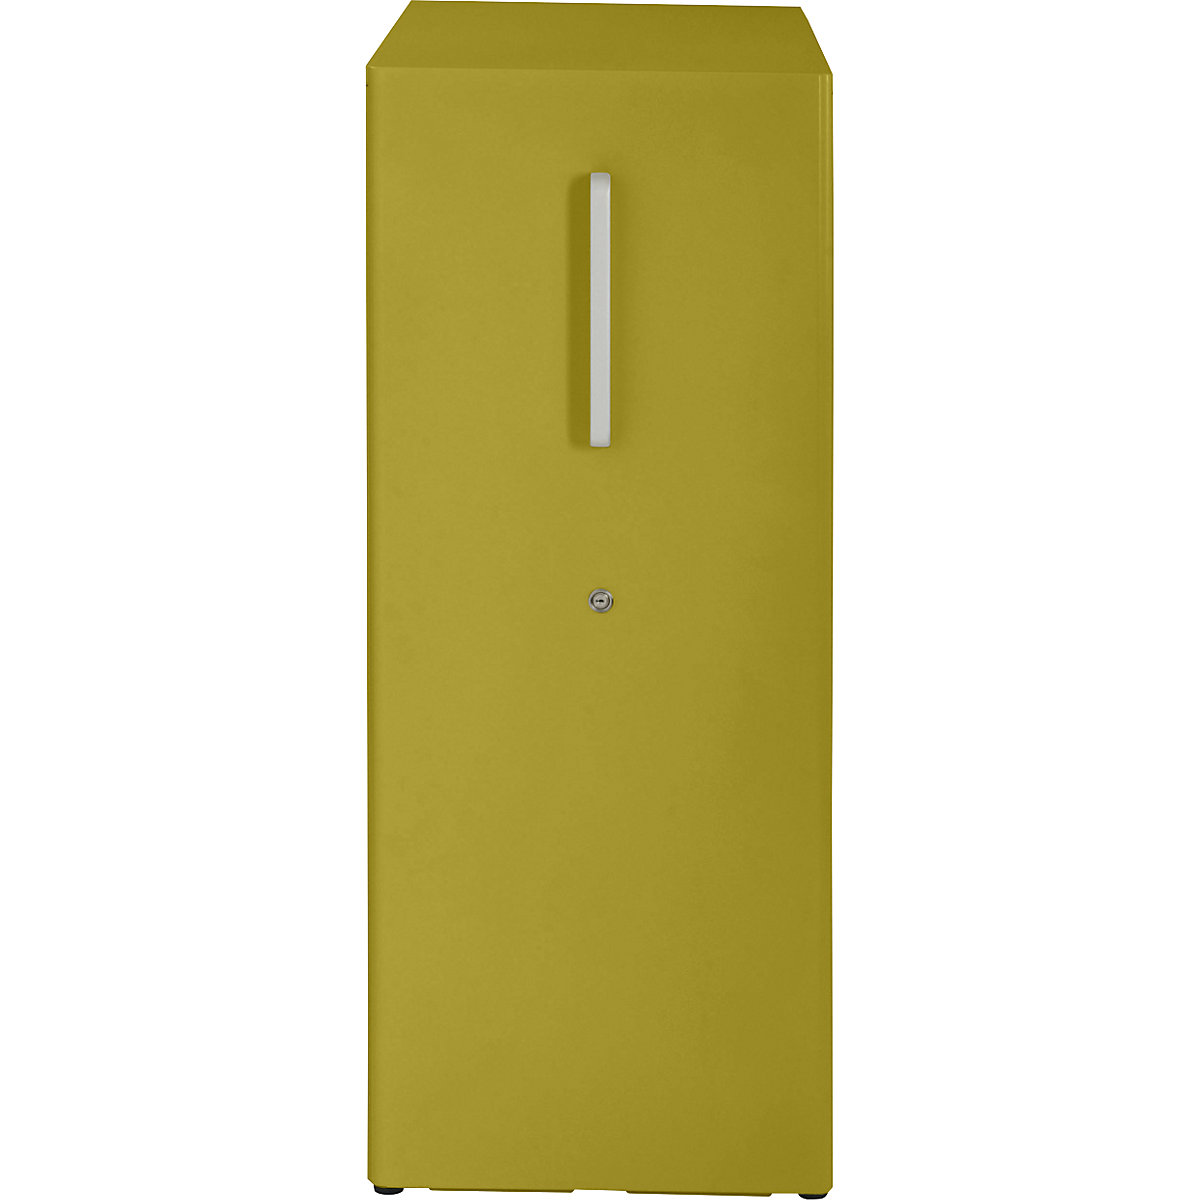 Večnamenski predalnik Tower™ 3, z vrhnjo ploščo – BISLEY (Slika izdelka 2)-1